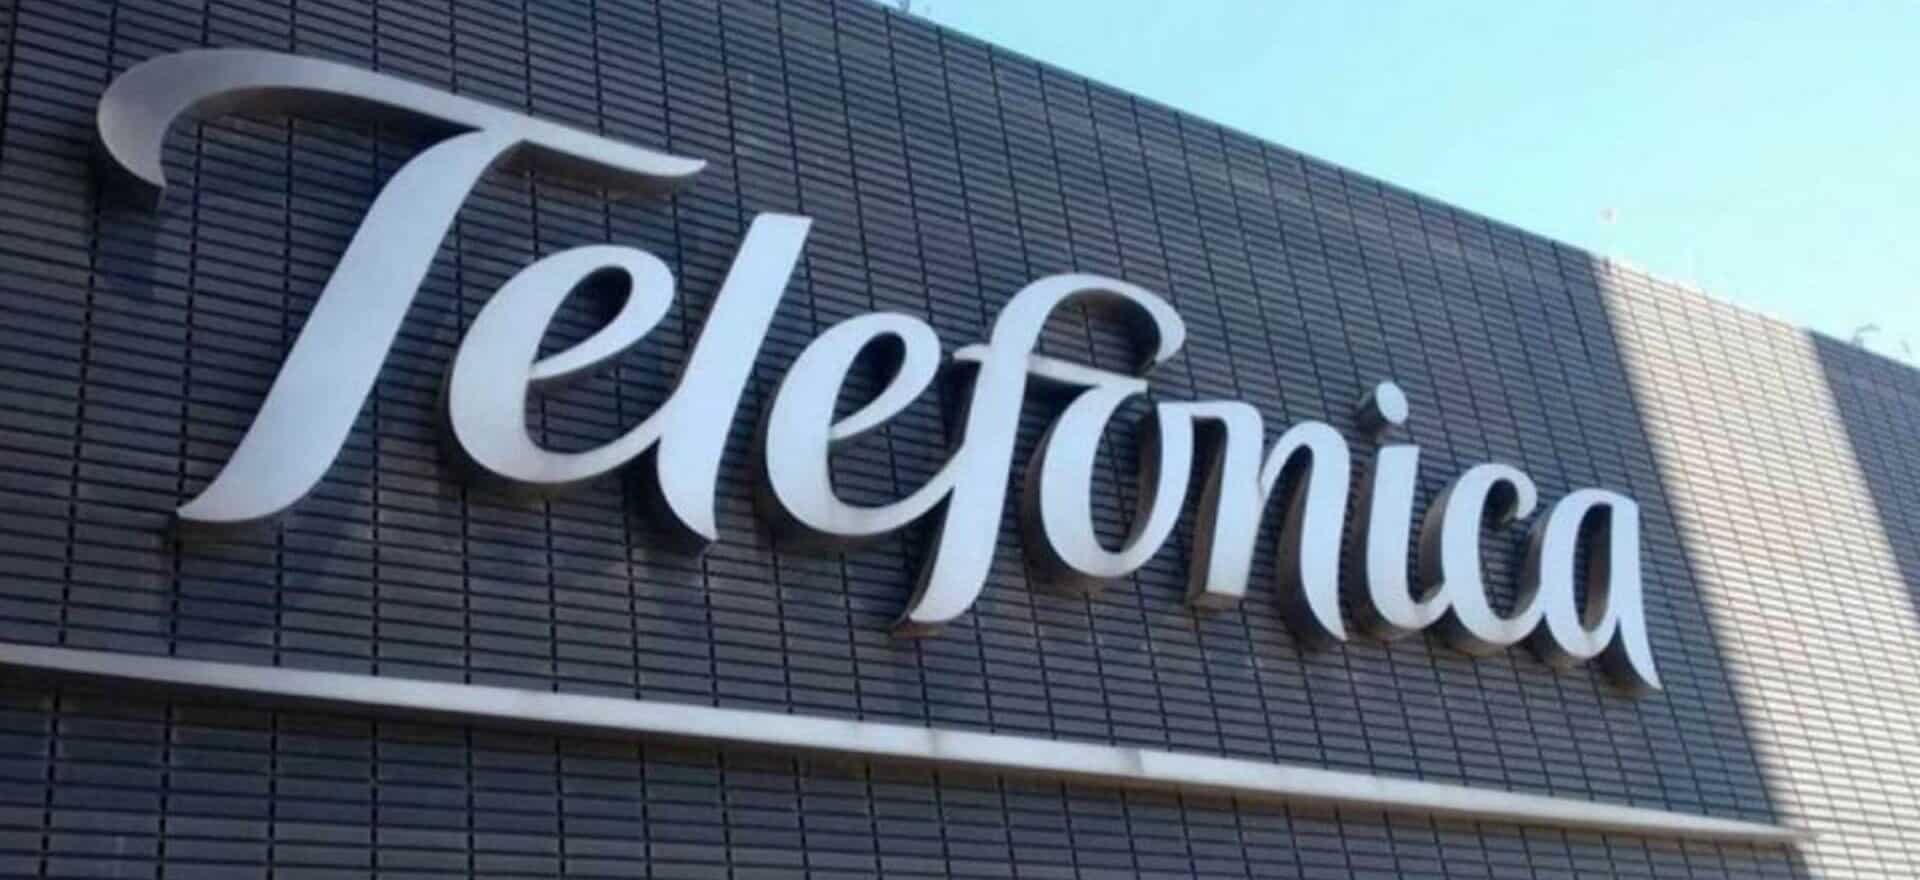 Desplome de Telefónica en el IBEX 35 tras el acuerdo de Vodafone con 1&1 en Alemania